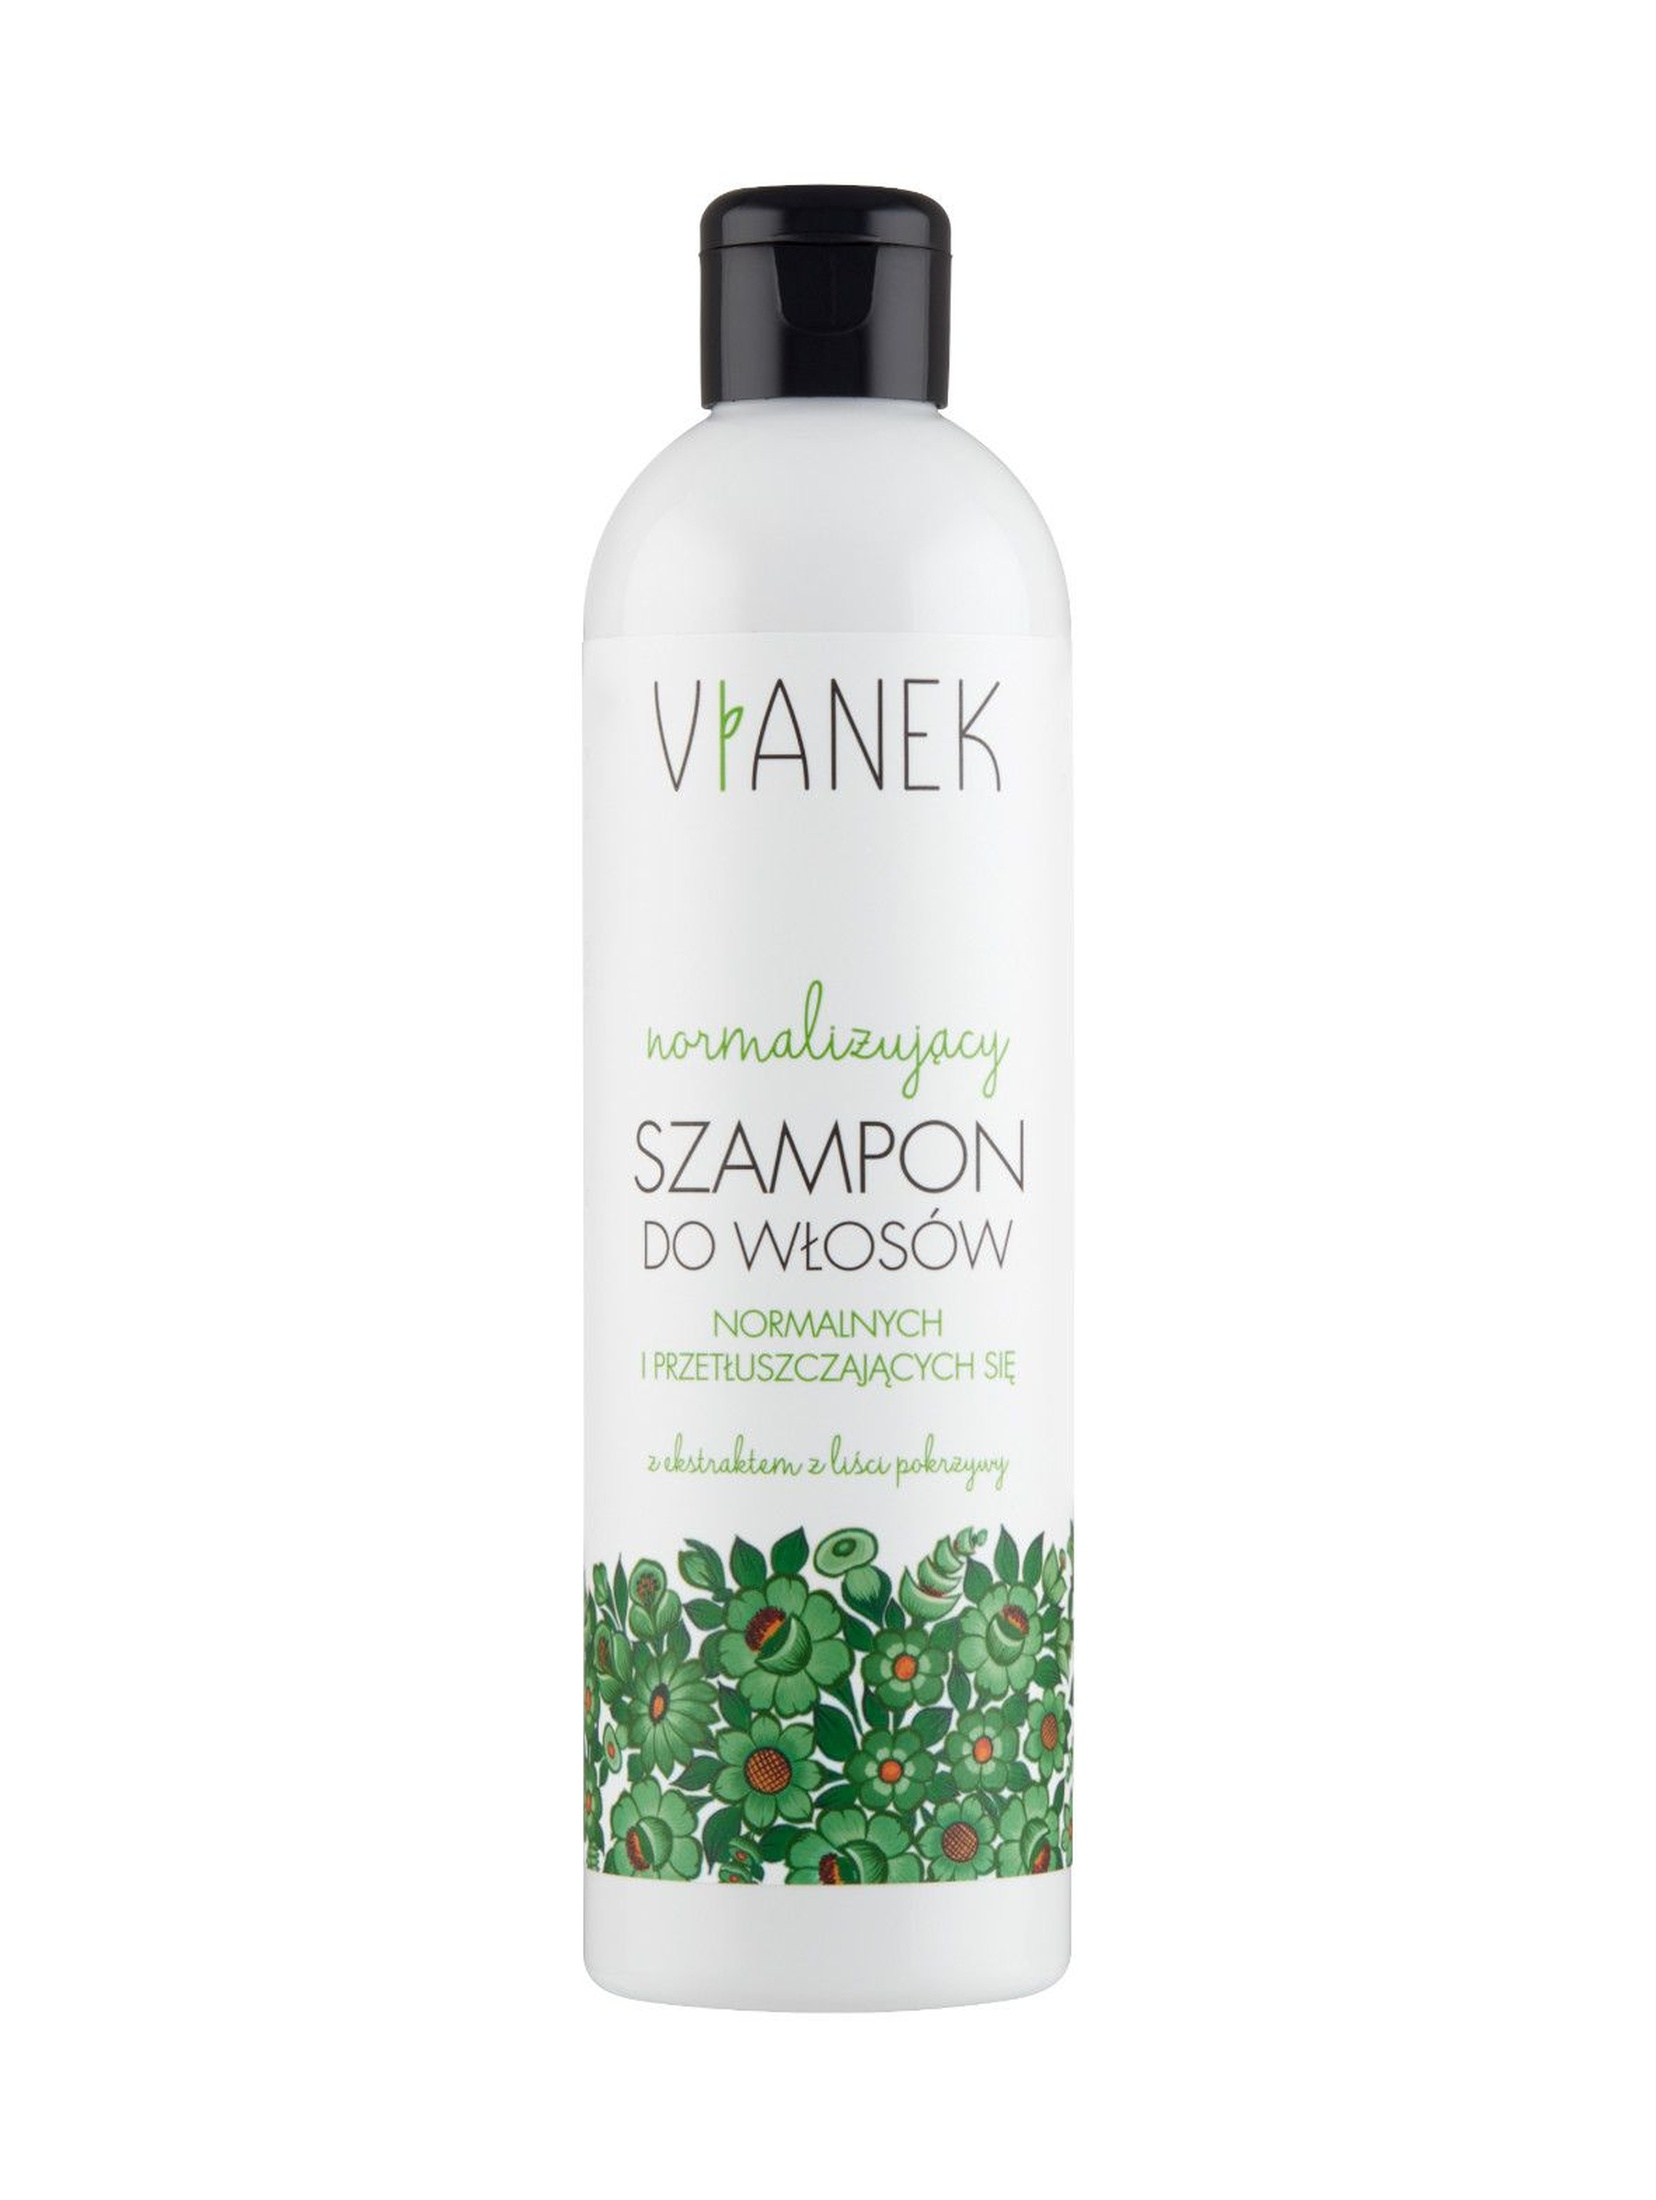 Normalizujący szampon do włosów normalnych i przetłuszczających się Vianek 300 ml